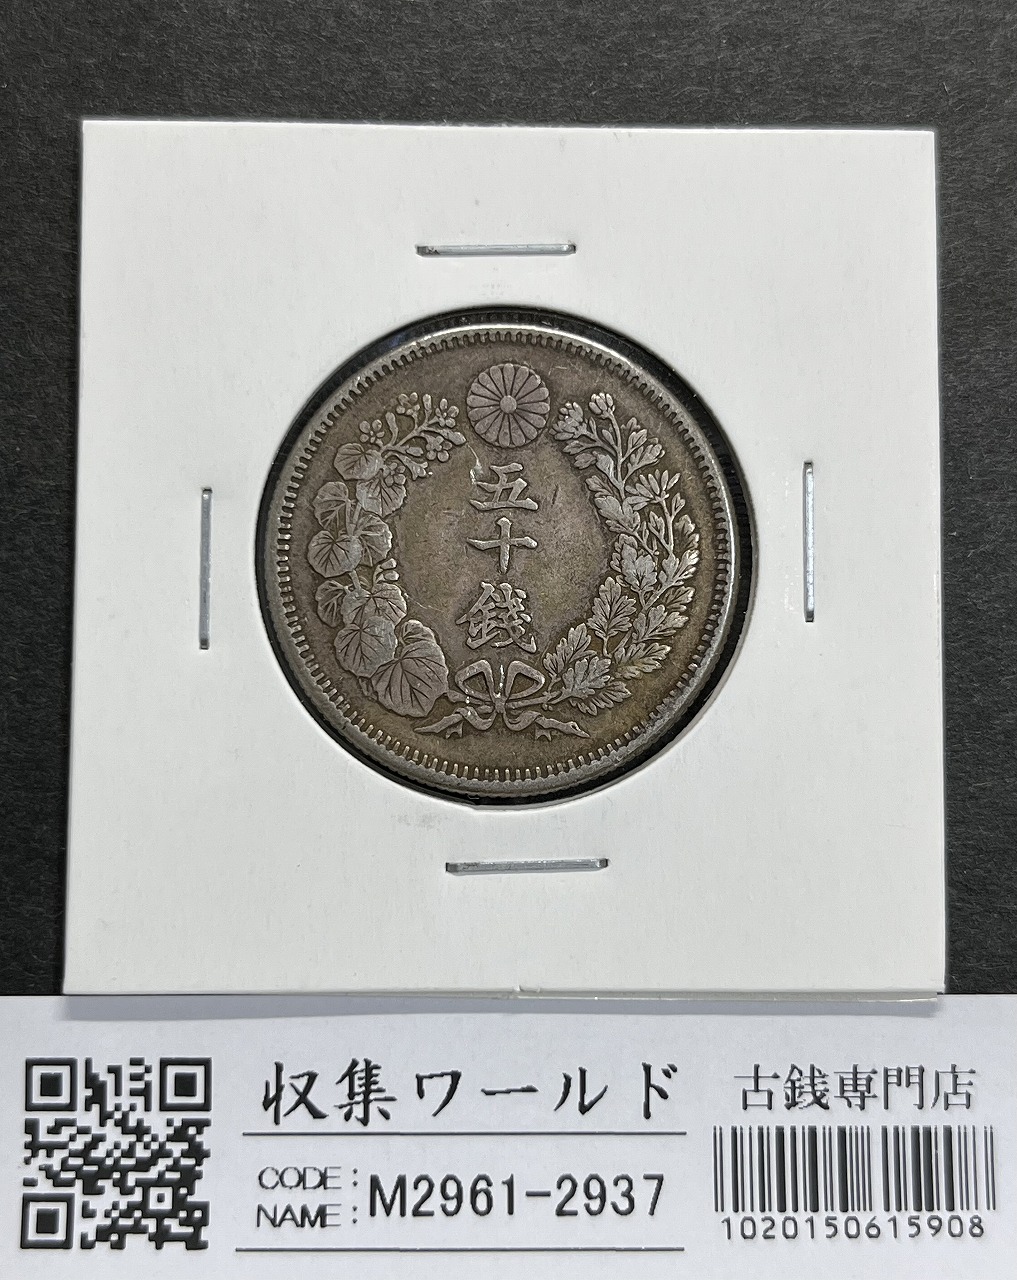 貿易銀 明治 8年 1円銀貨 1875年 PCGS-AU55 準未極美ナイストン | 収集 